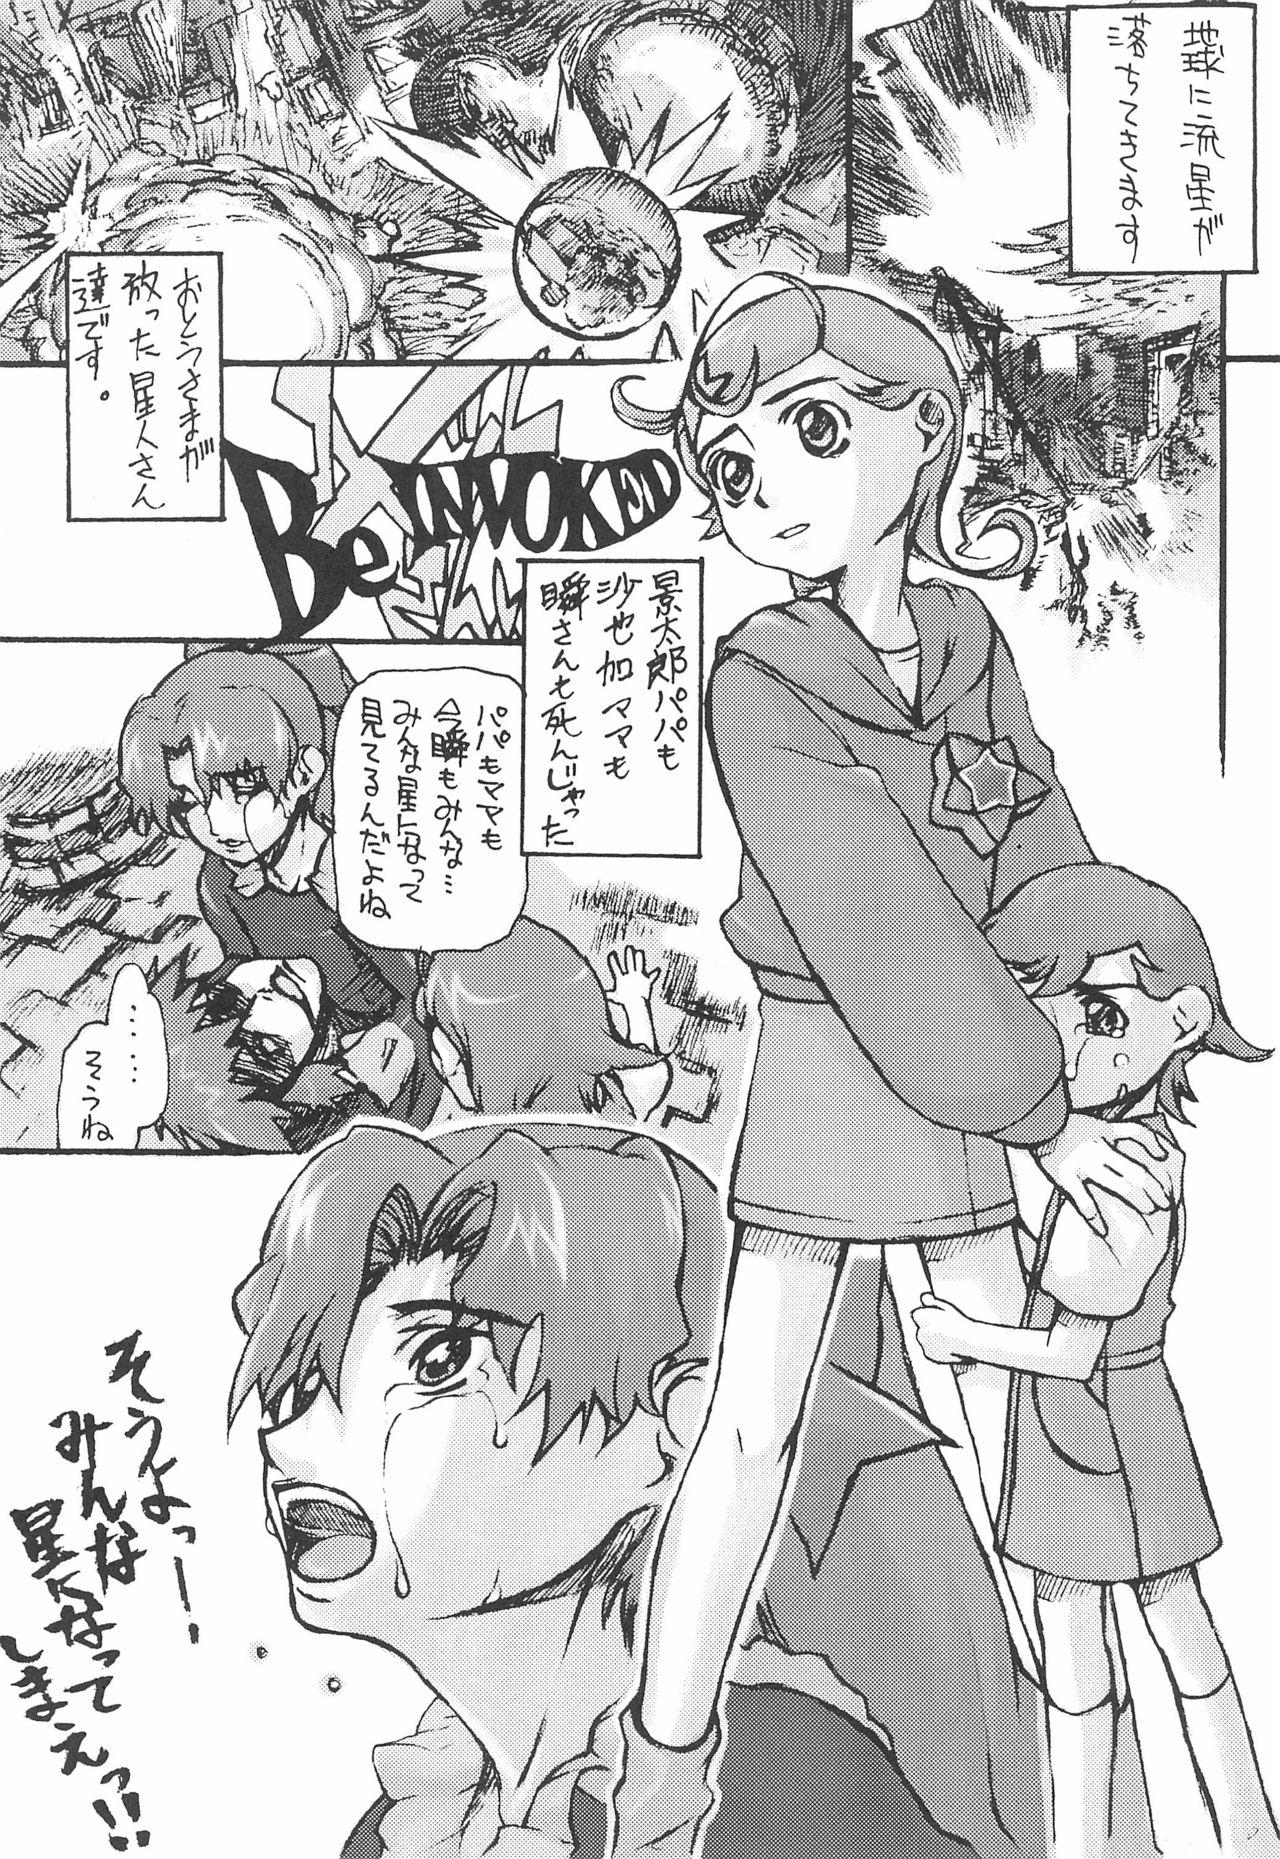 Girl Sucking Dick Comet-san Comical Comics - Cosmic baton girl comet-san Uncut - Page 9